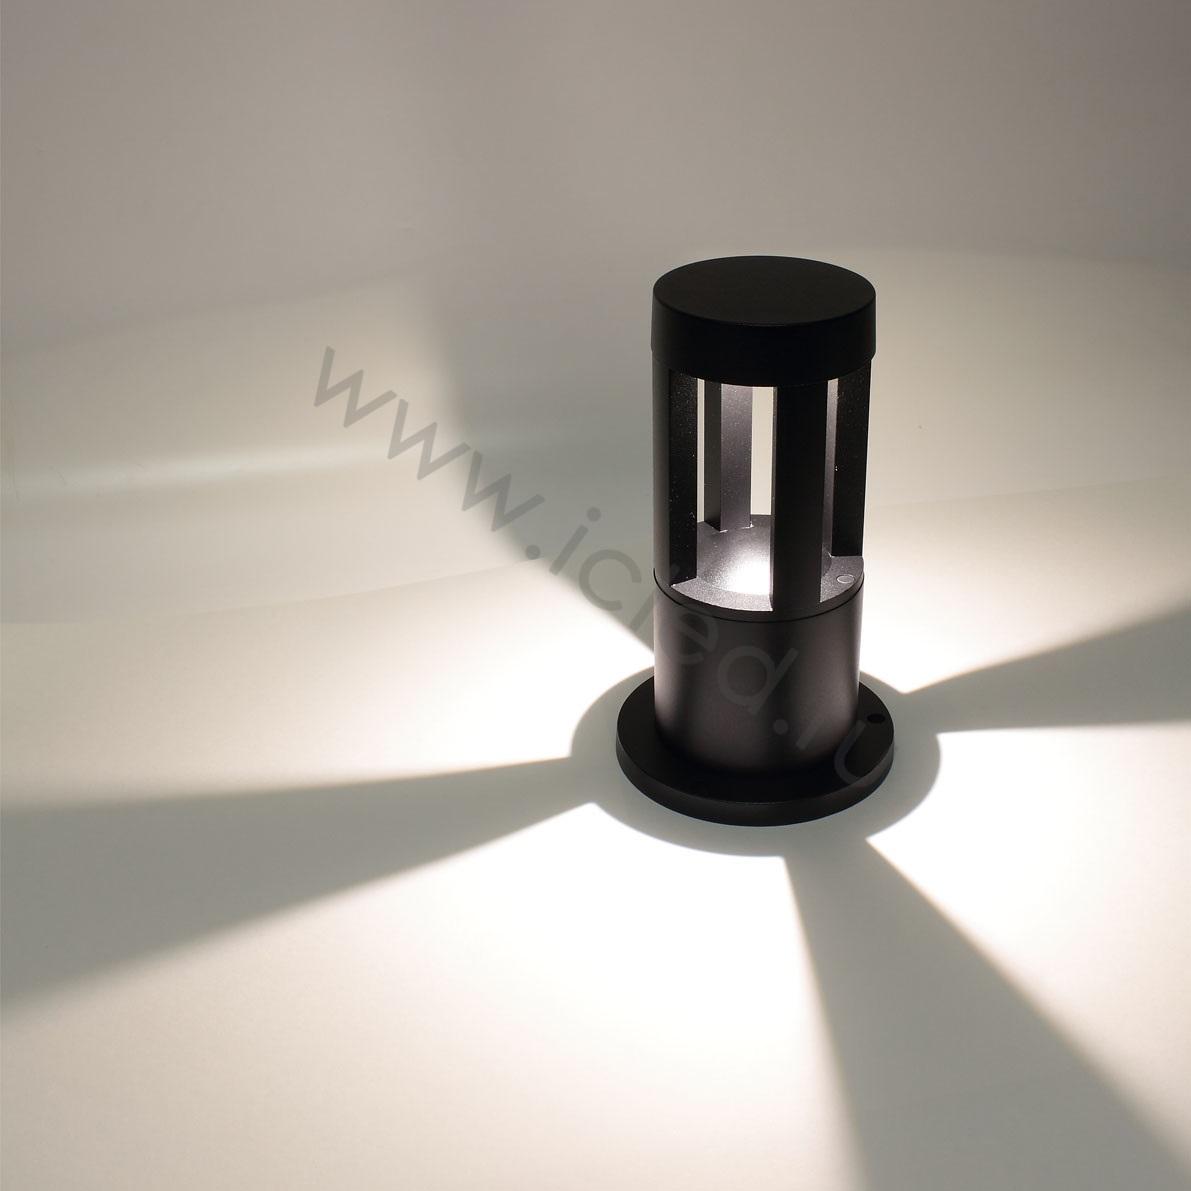 Ландшафтное и фасадное освещение Уличный светильник столбик JH-BD-B14 DHL33 (220V, 7W, черный корпус, 260mm, IP65, warm white)